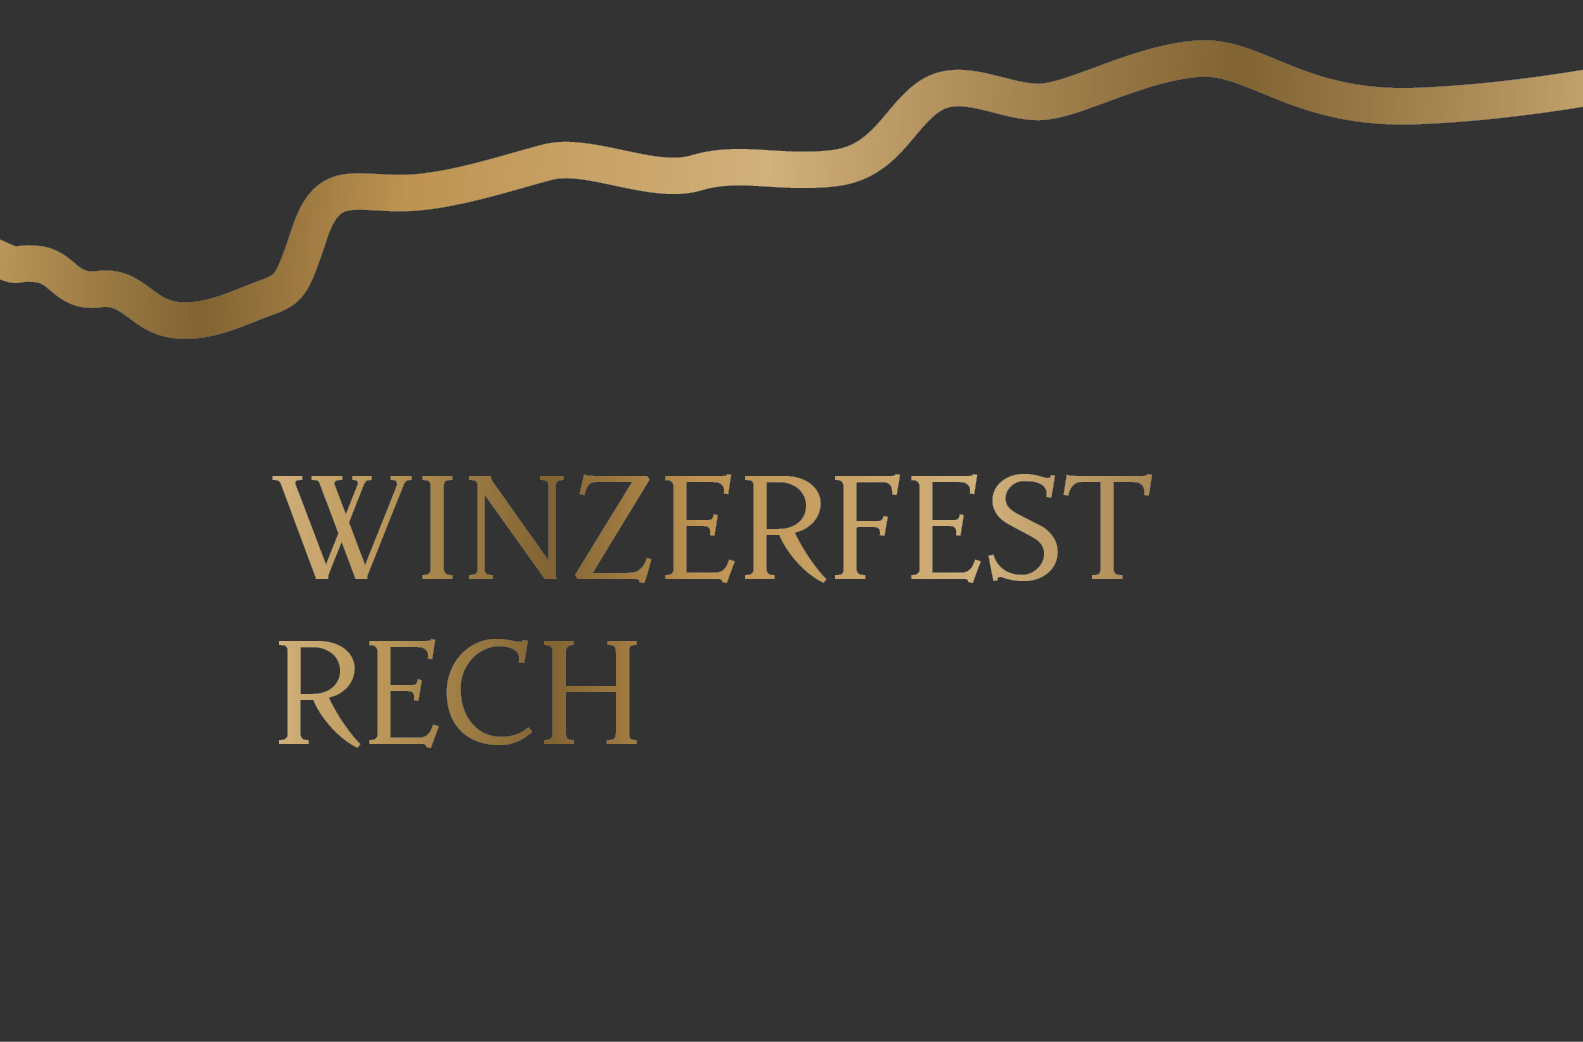 Veranstaltung_Winzerfest Rech